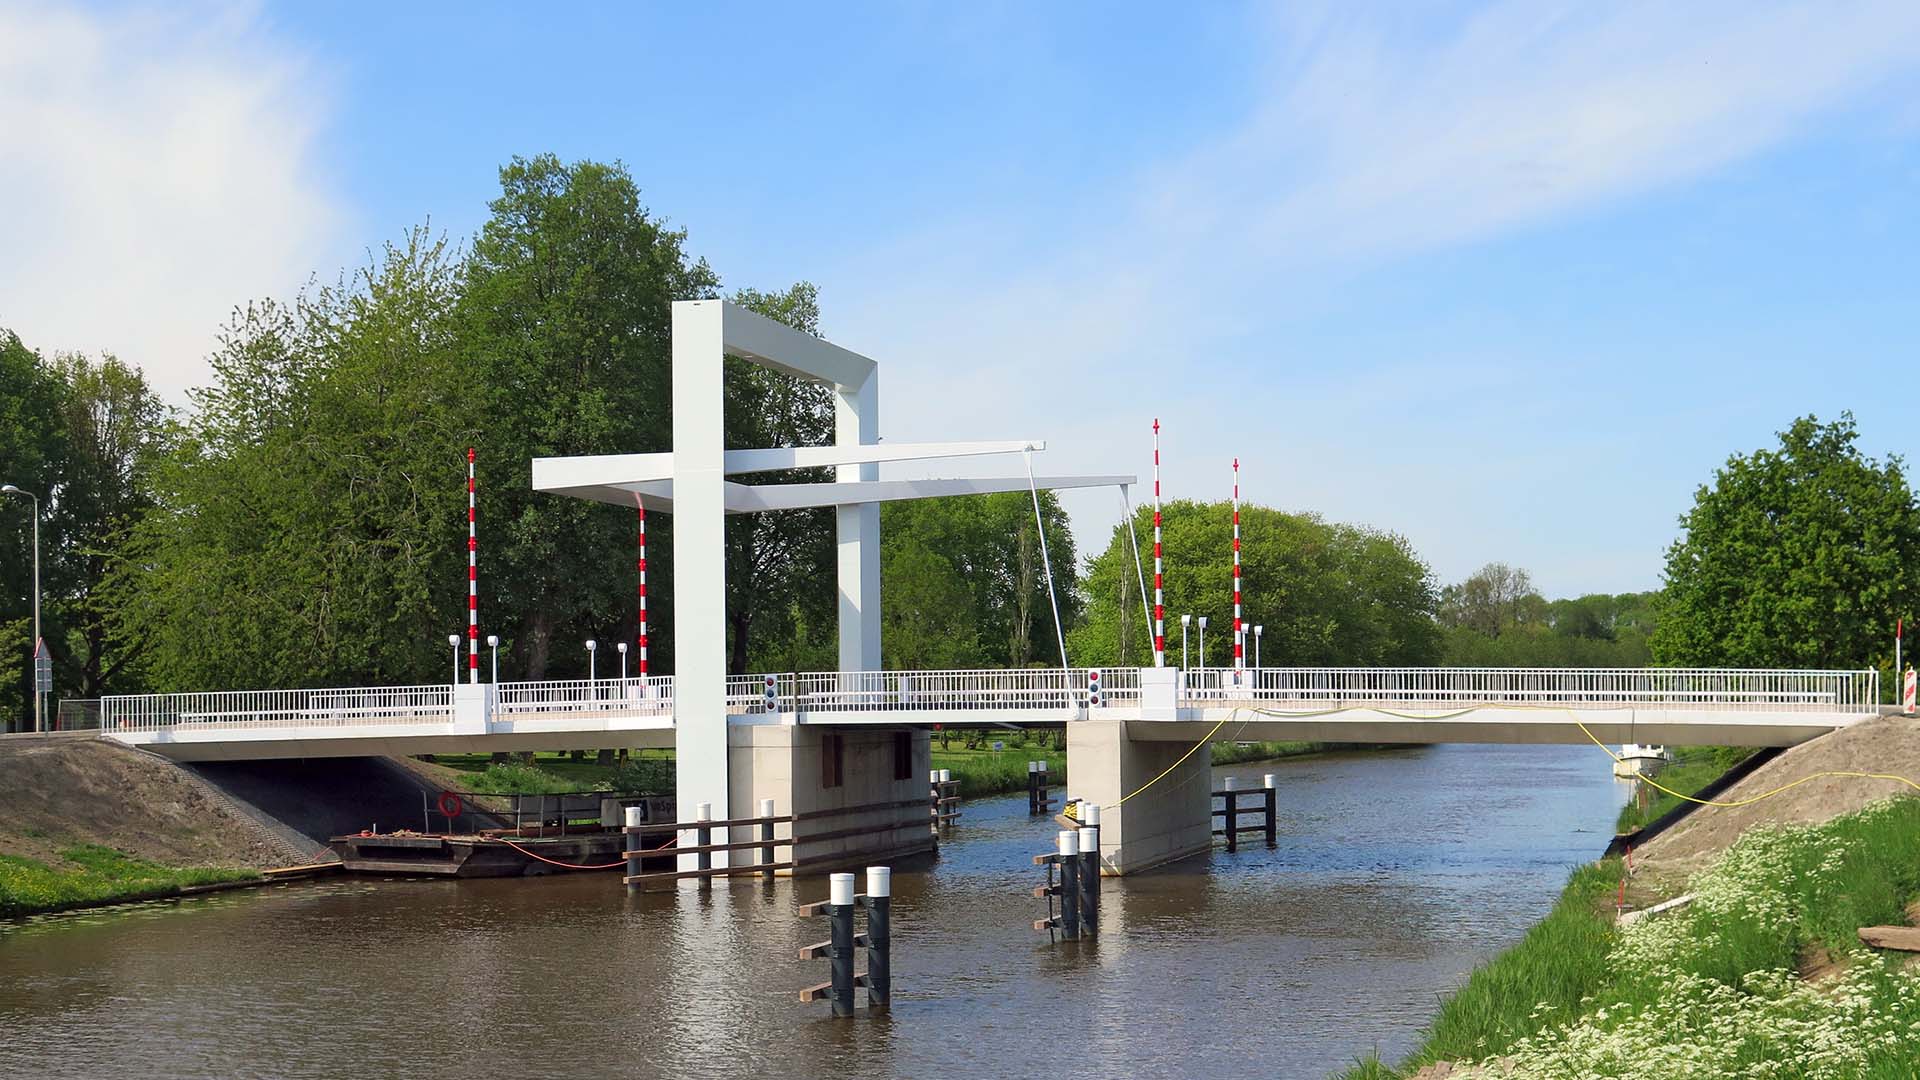 Marknesserbrug-zijaanzicht-ophaalbrug-ontwerp-ipvDelft.